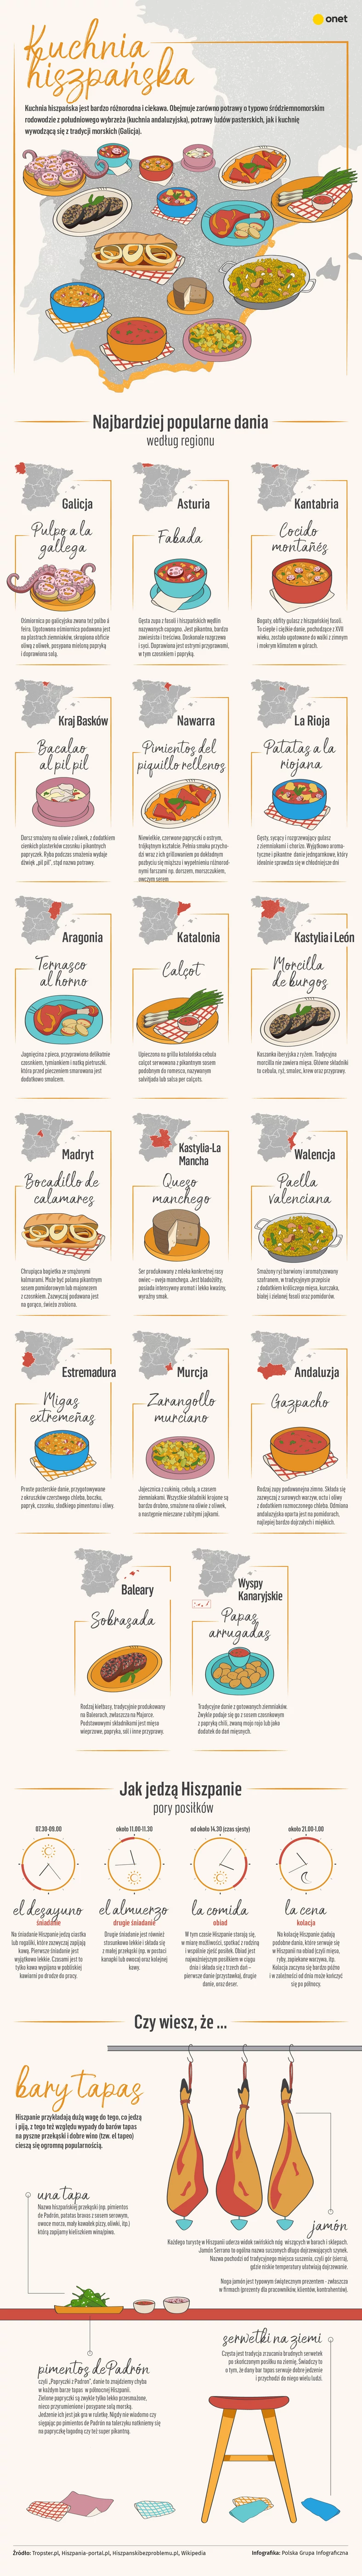 Kuchnia hiszpańska i hiszpańskie przysmaki, dania i produkty z różnych regionów Hiszpanii